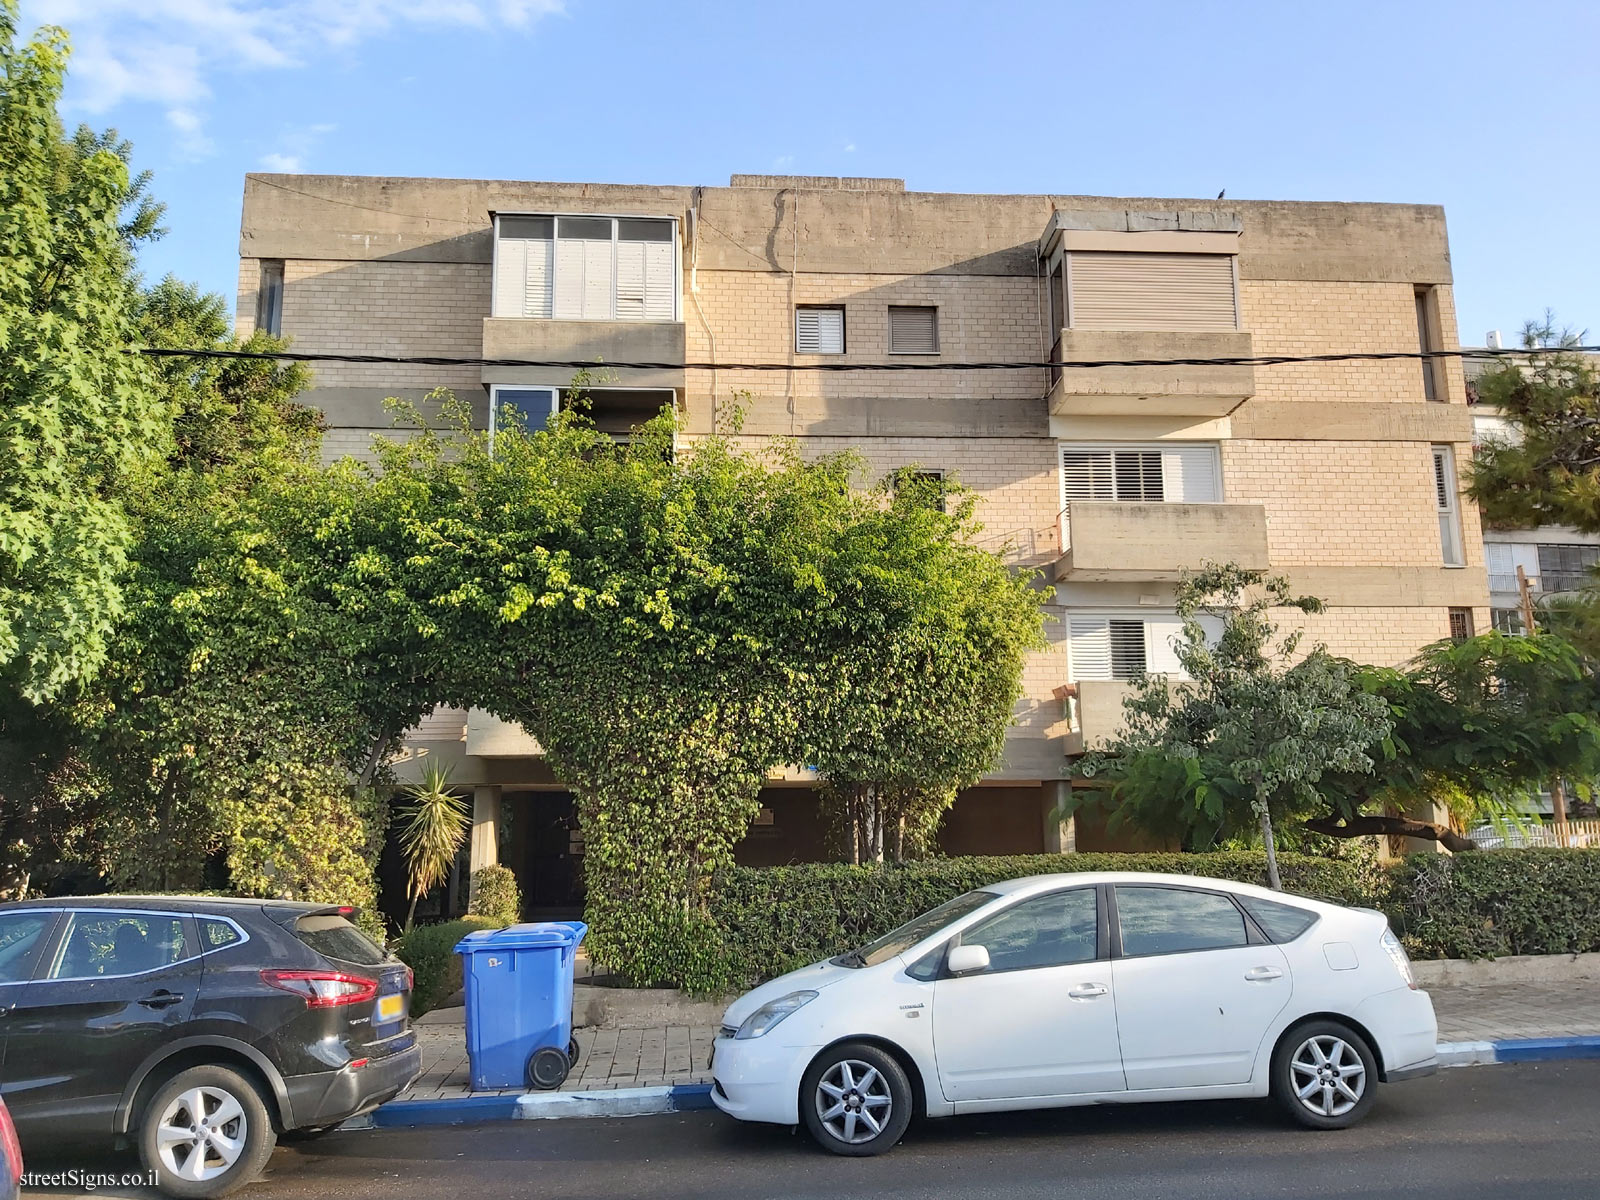 The house of Shlomo Nitzan - HaPalmah St 13, Tel Aviv-Yafo, Israel